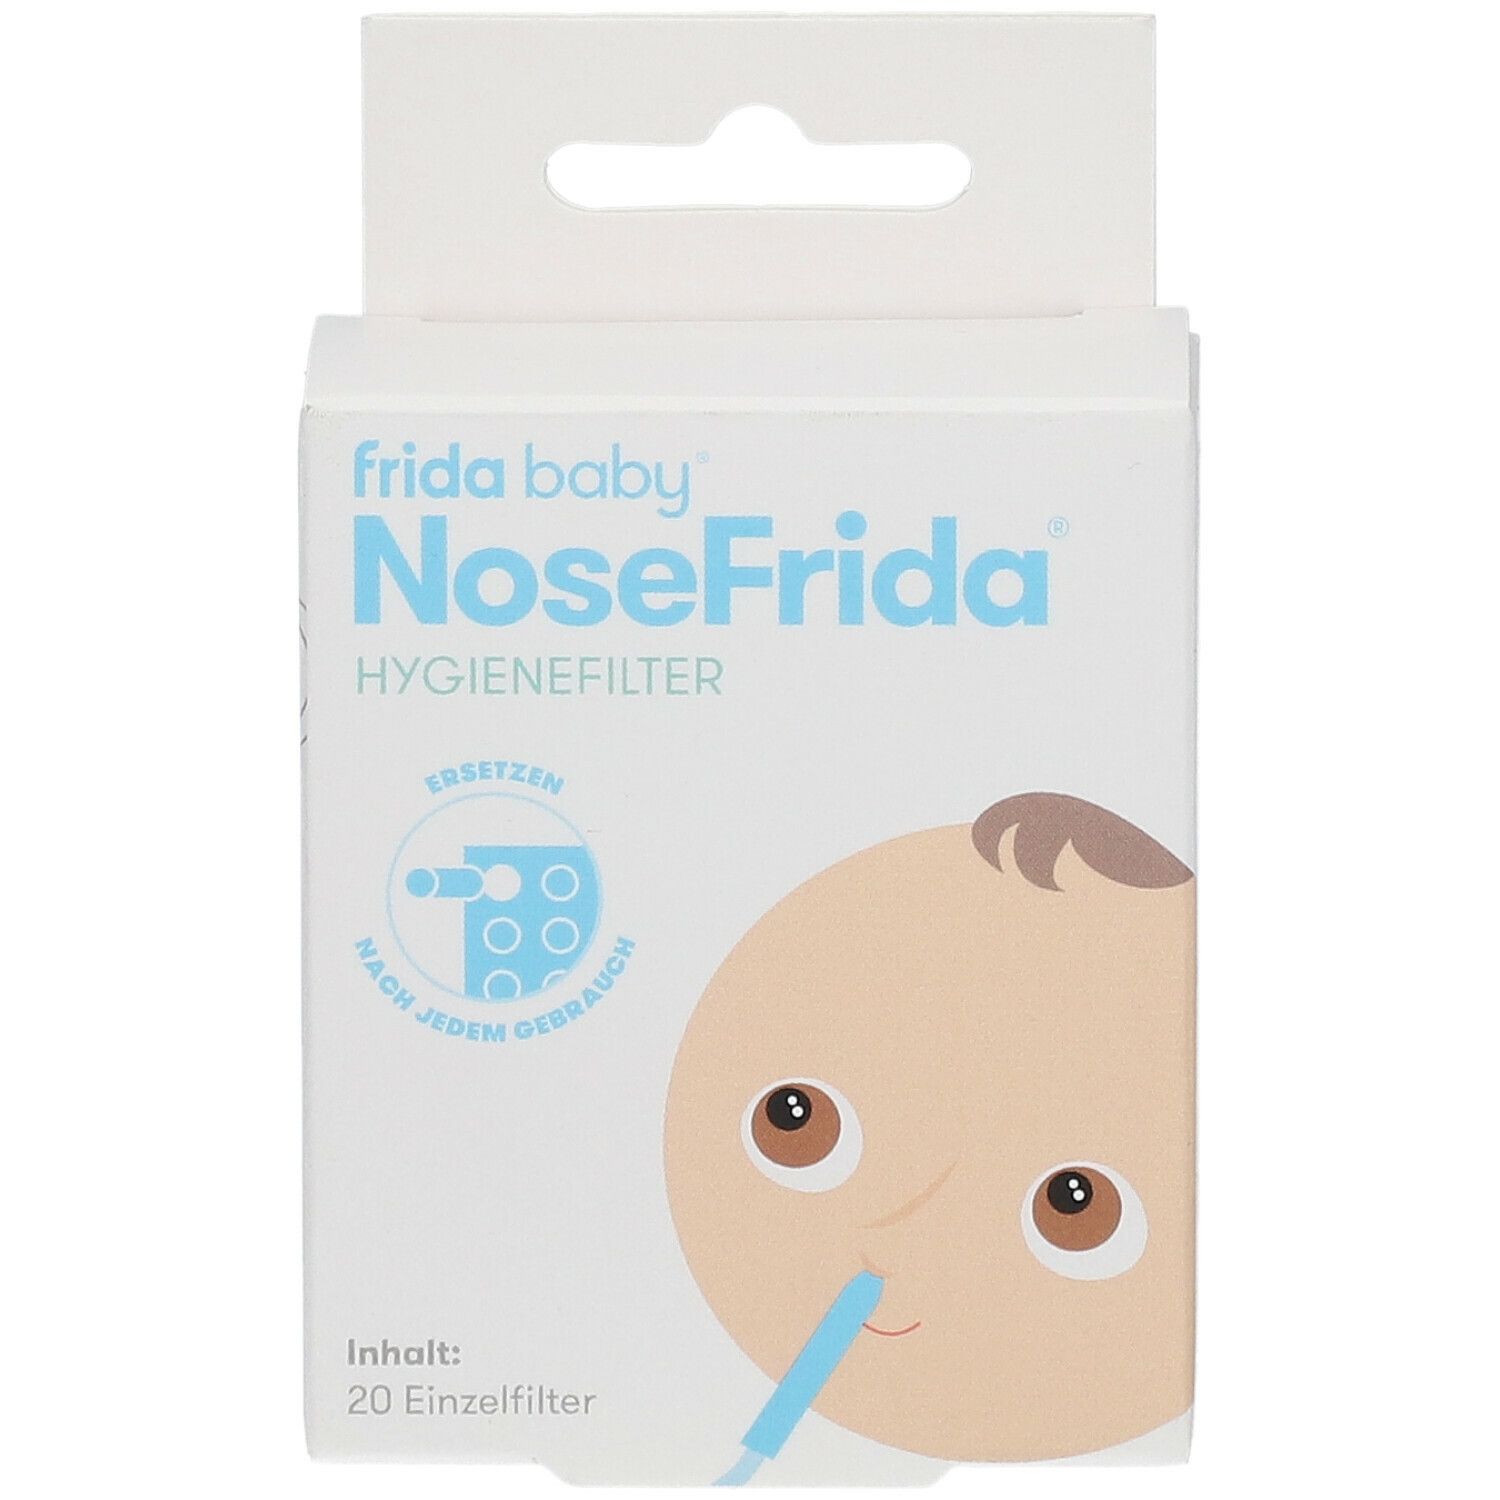 NoseFrida® Hygienefilter